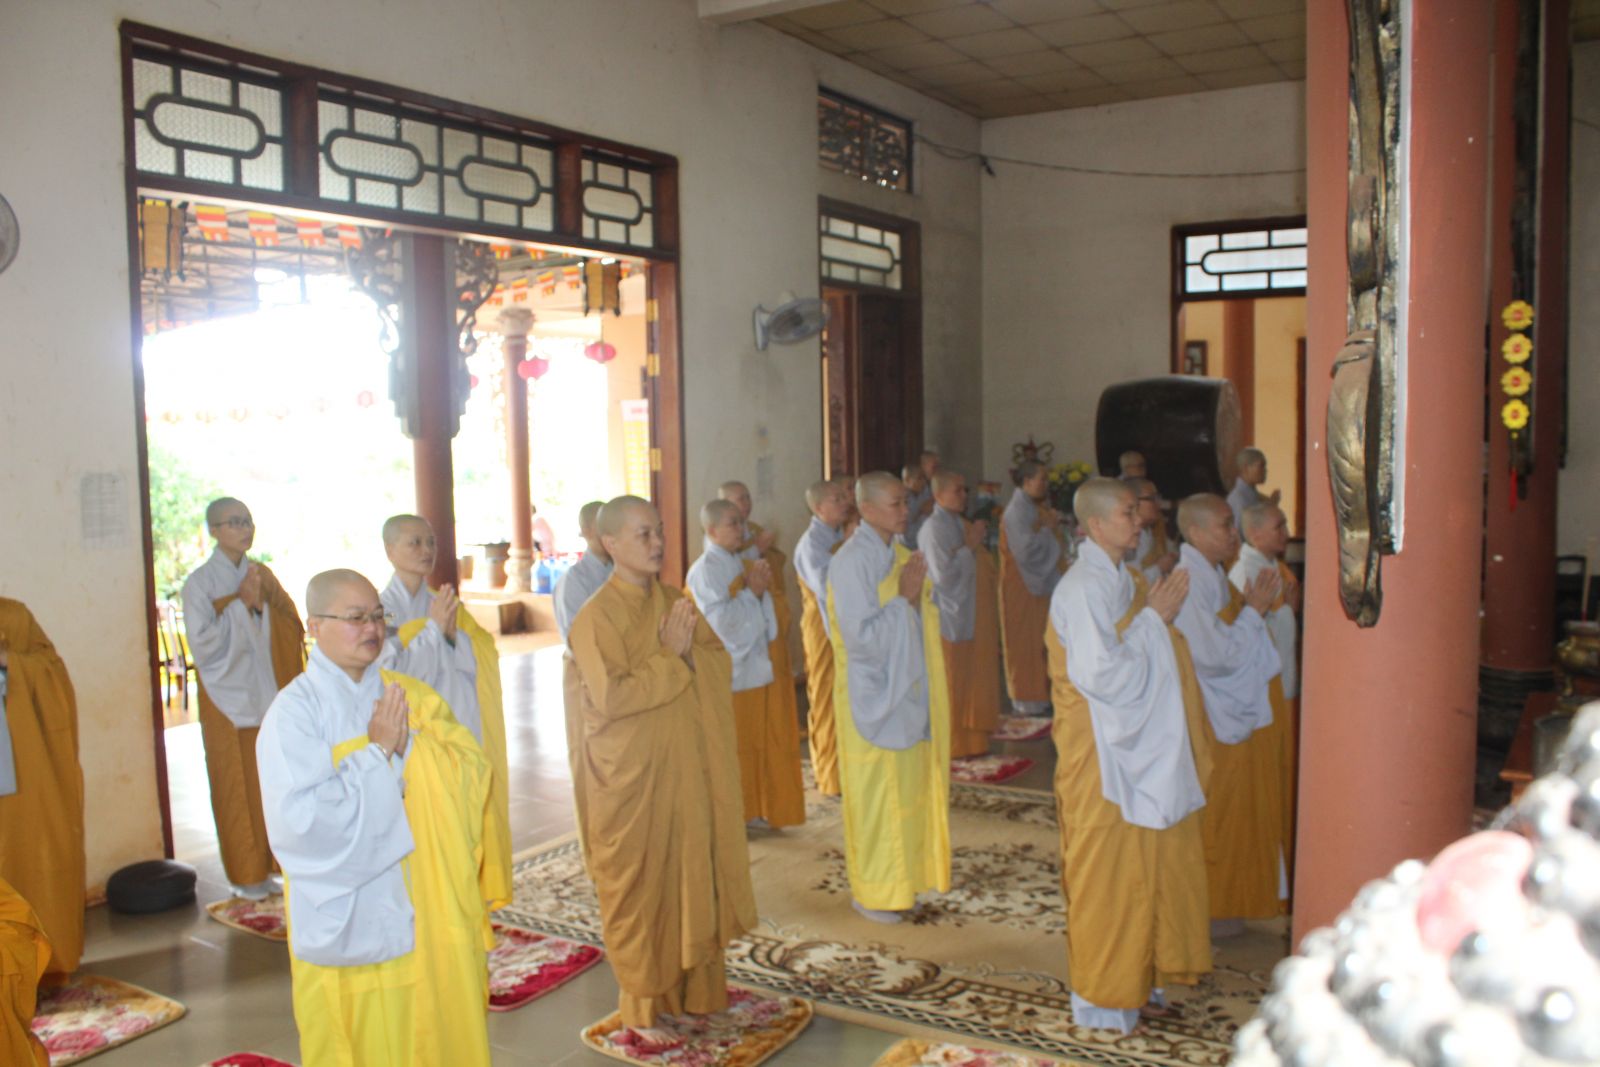 Đắk Nông - Ni giới tỉnh nhà tập trung Bố tát tại Hạ trường Phước Quang.